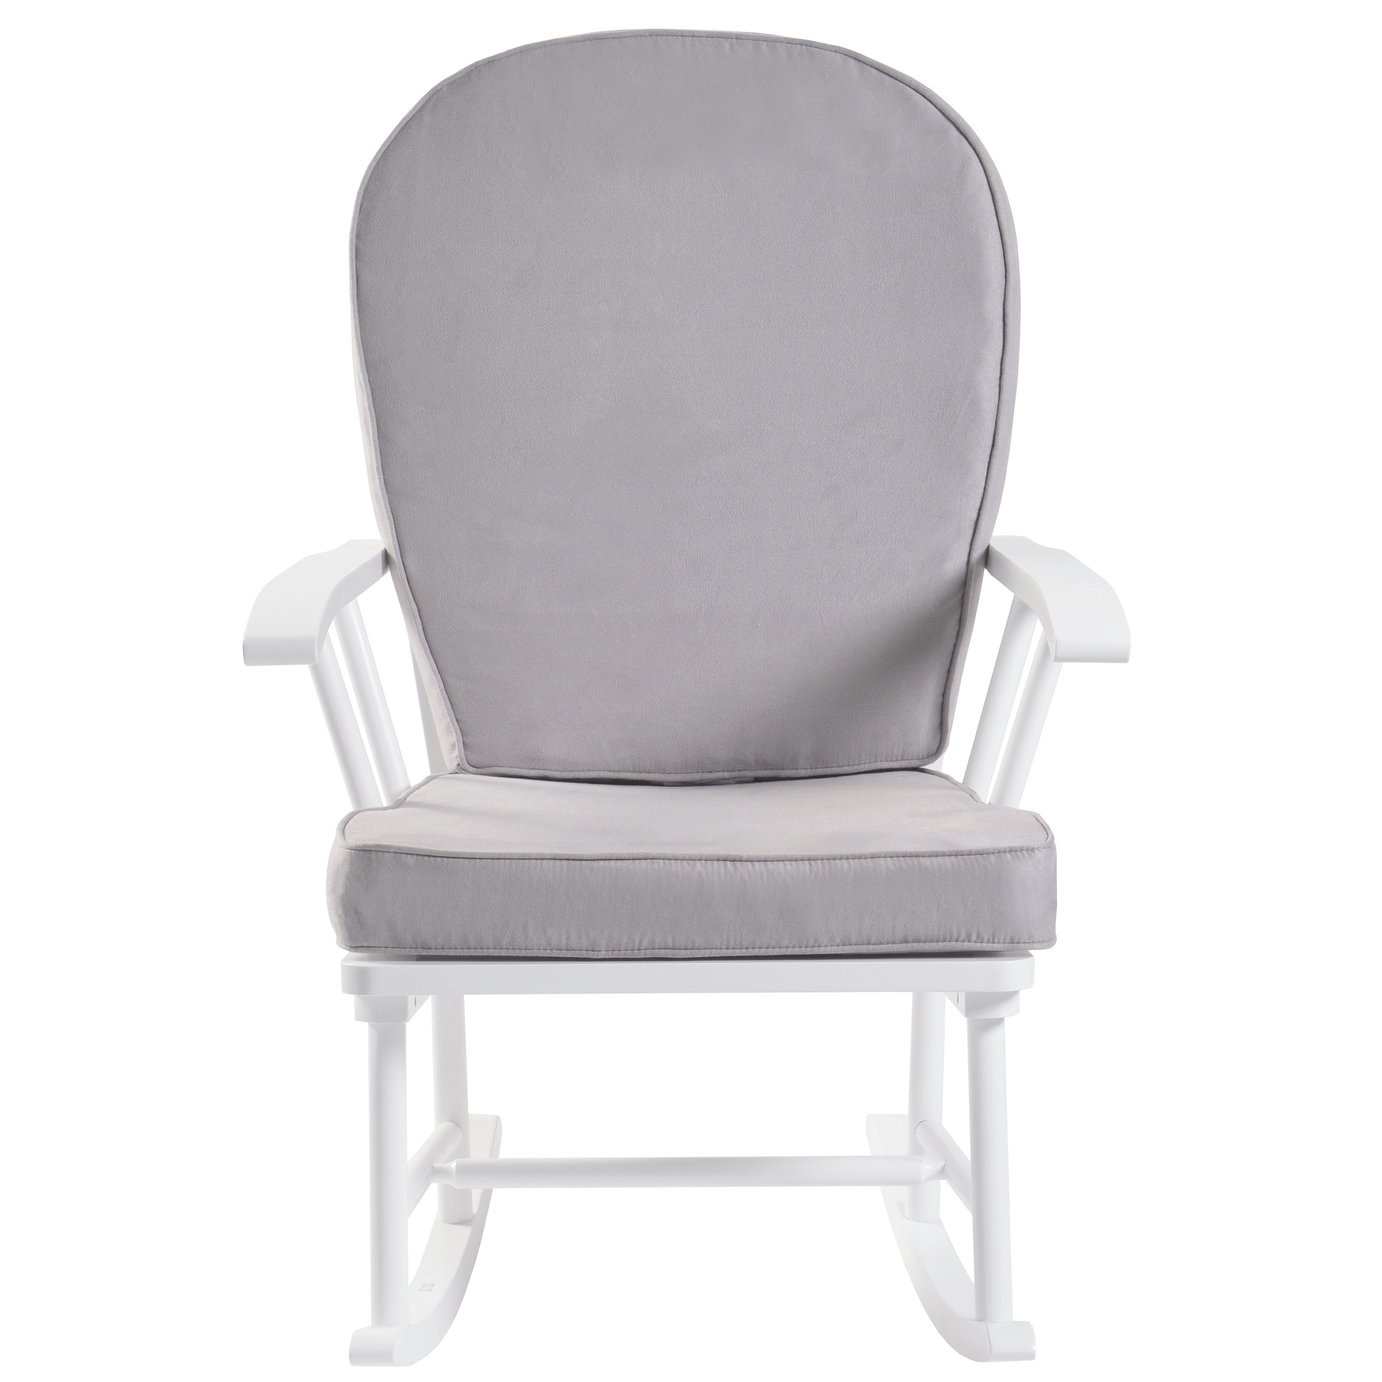 kub haldon nursing rocking chair grey